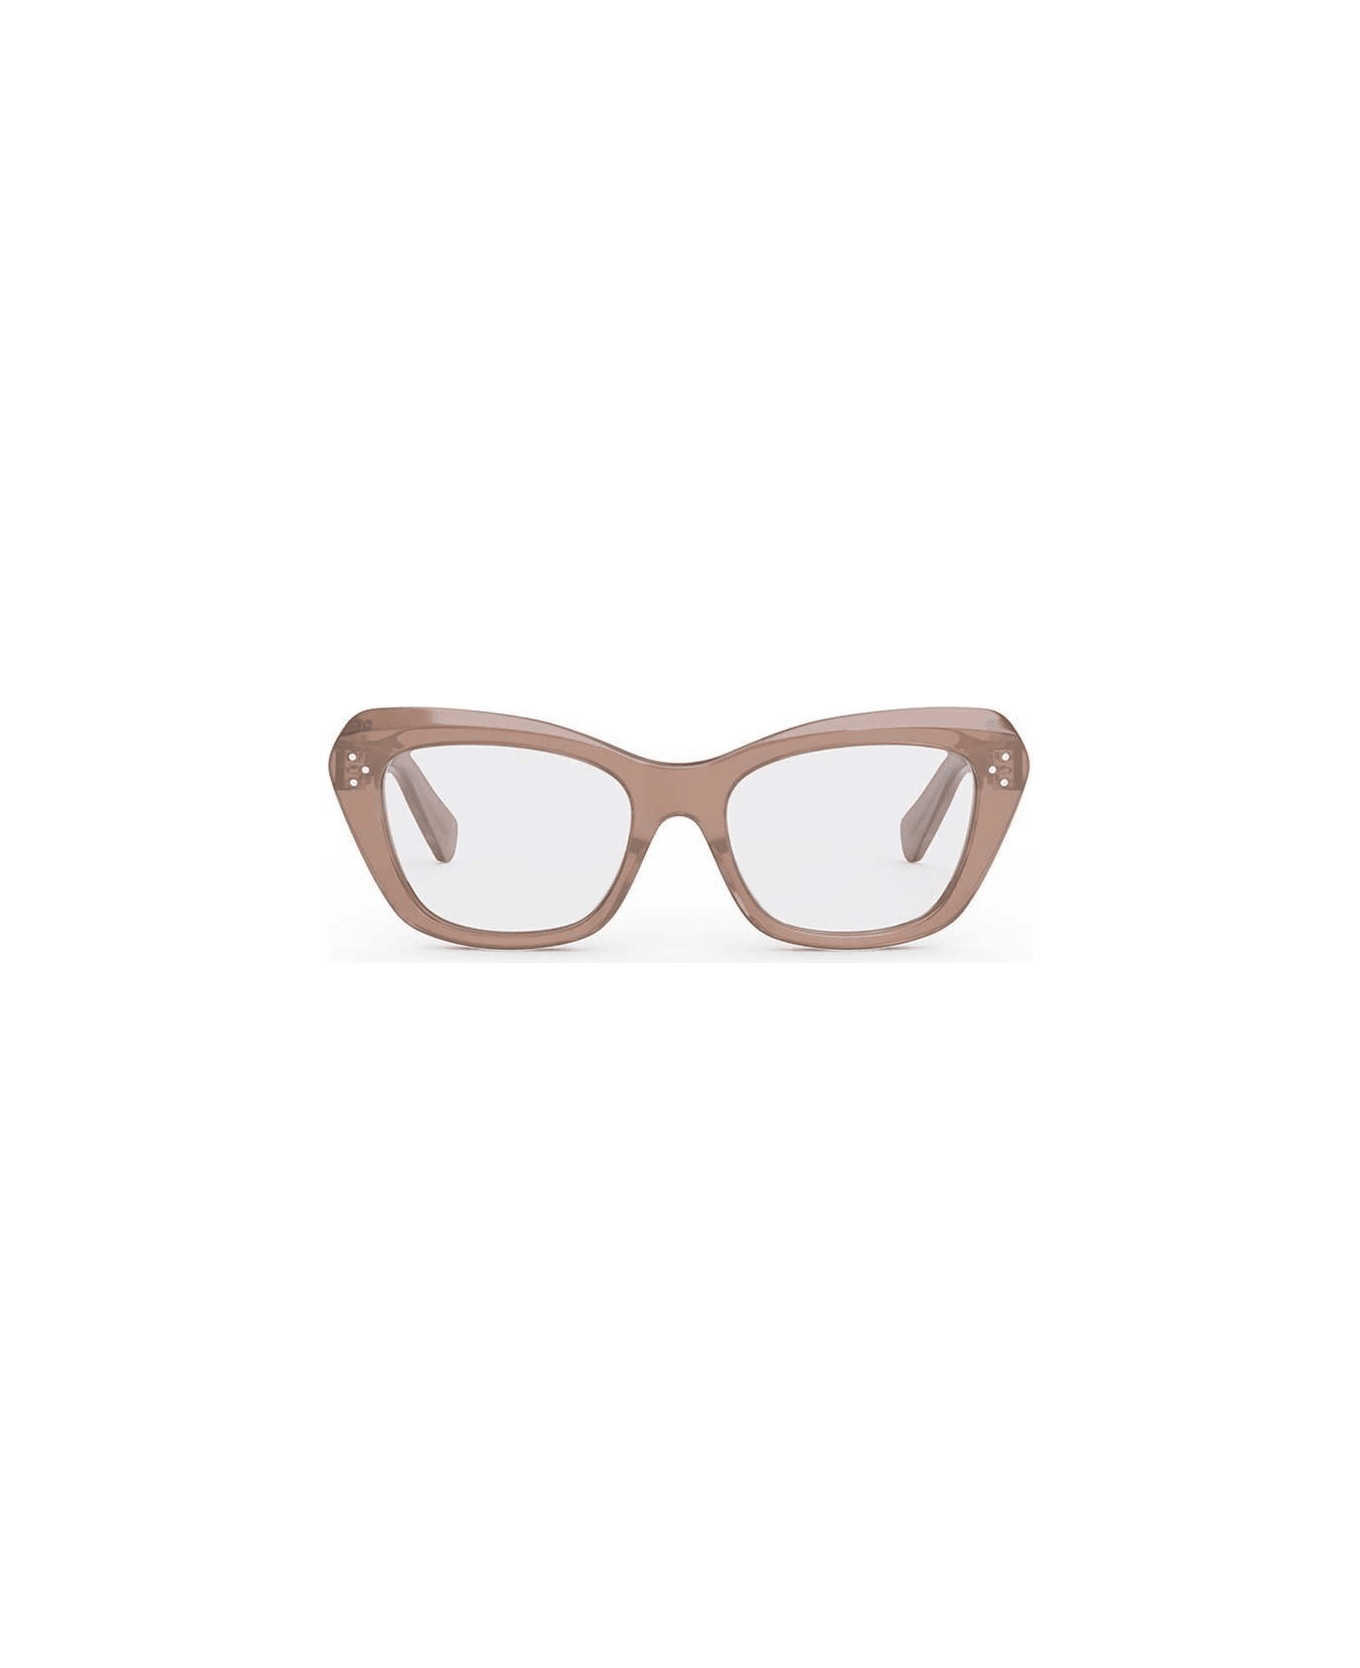 Celine Cat-eye Glasses - 074 アイウェア